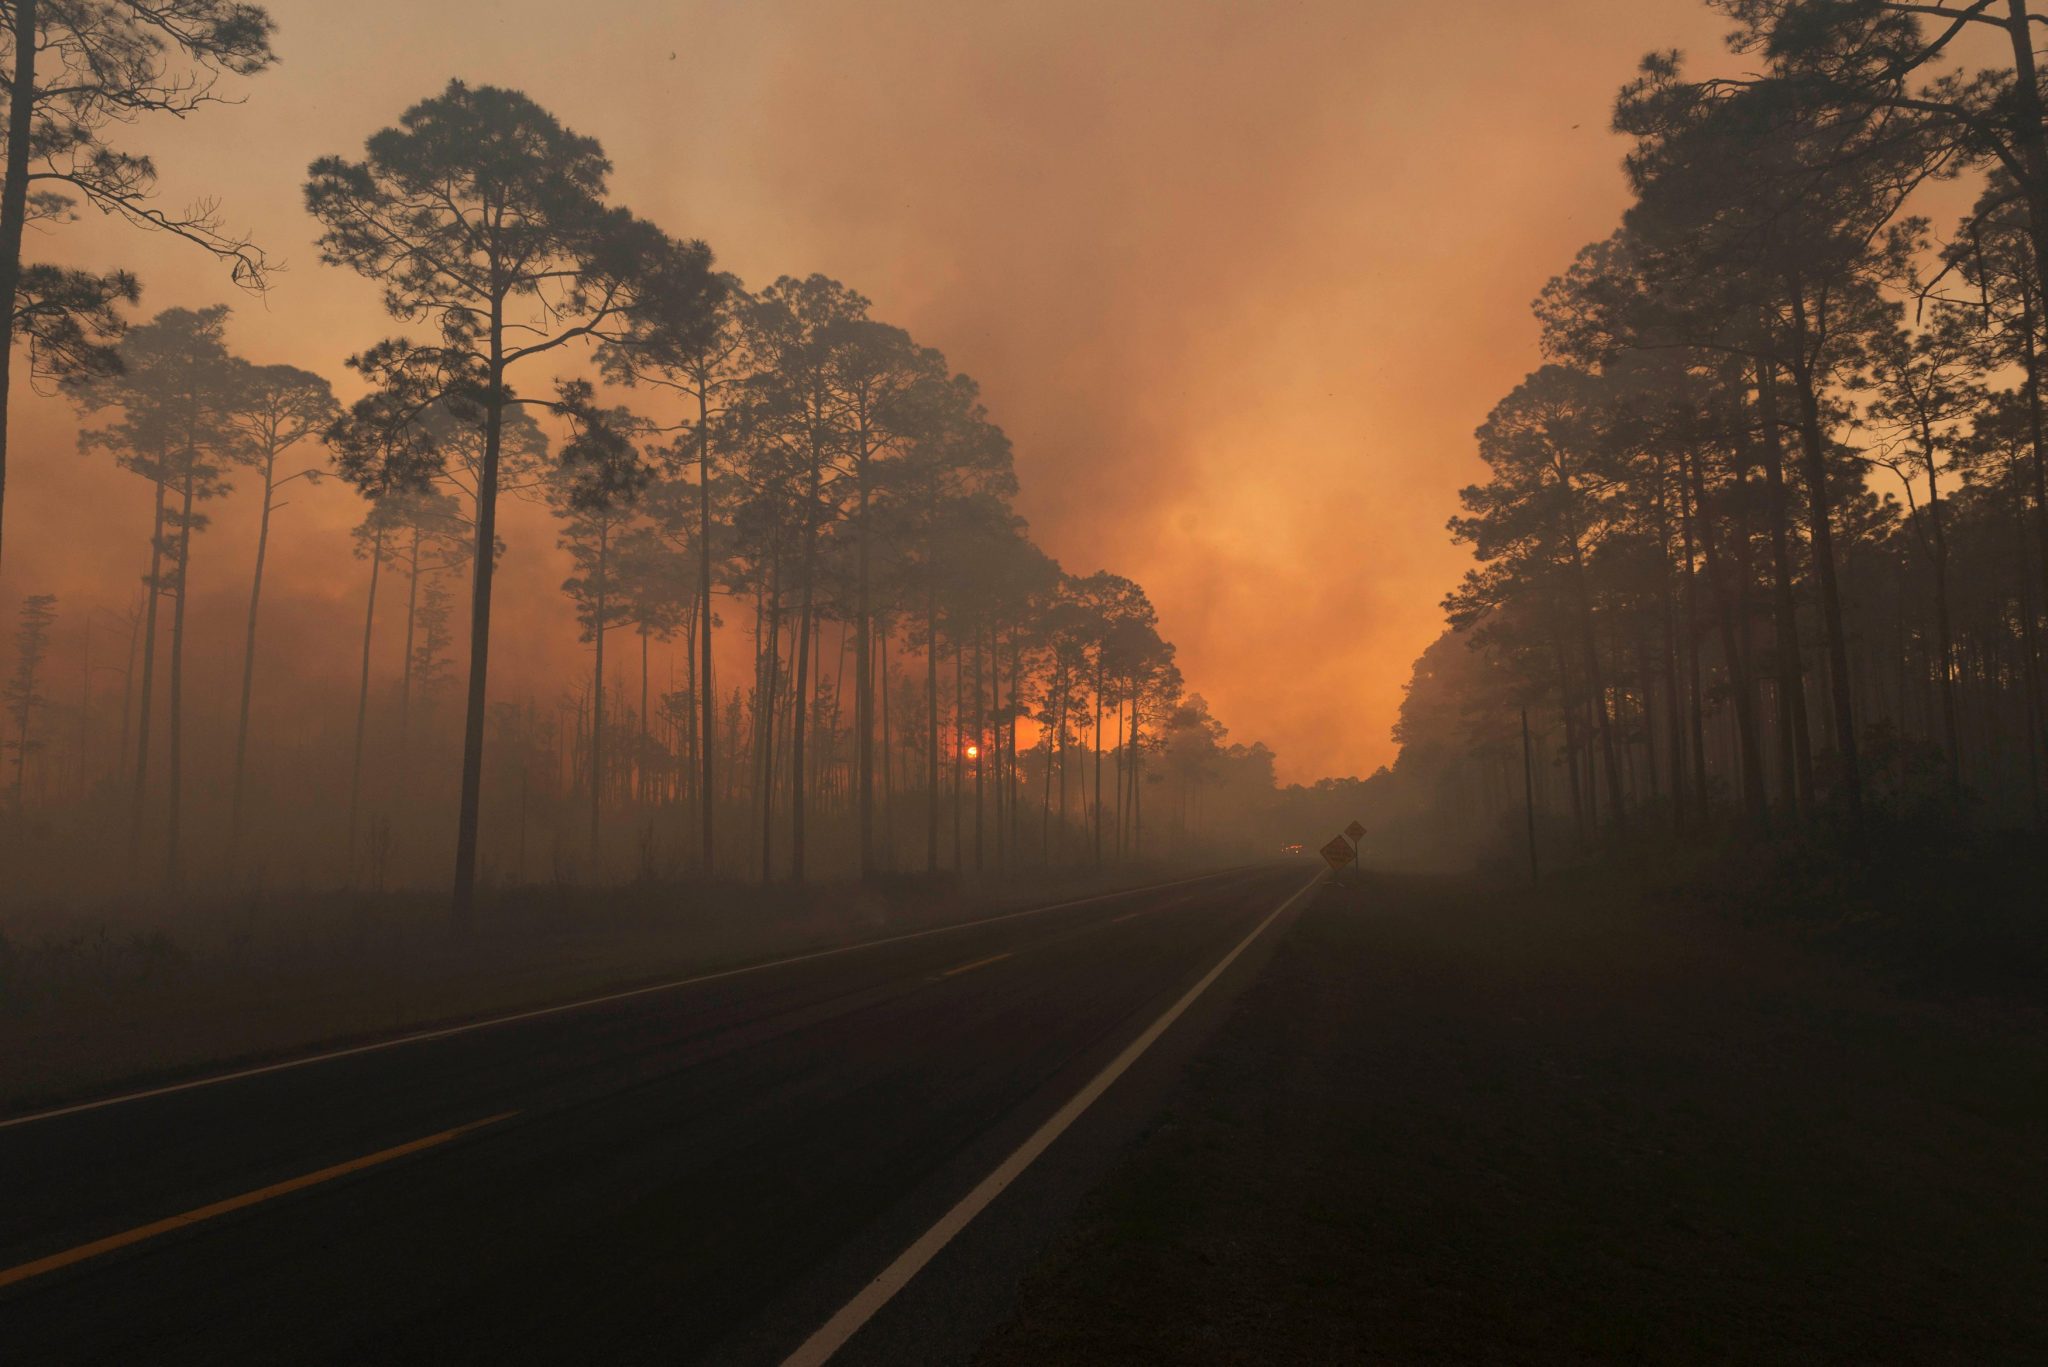   شاهد| نار جهنم تحرق غابات فى أمريكا